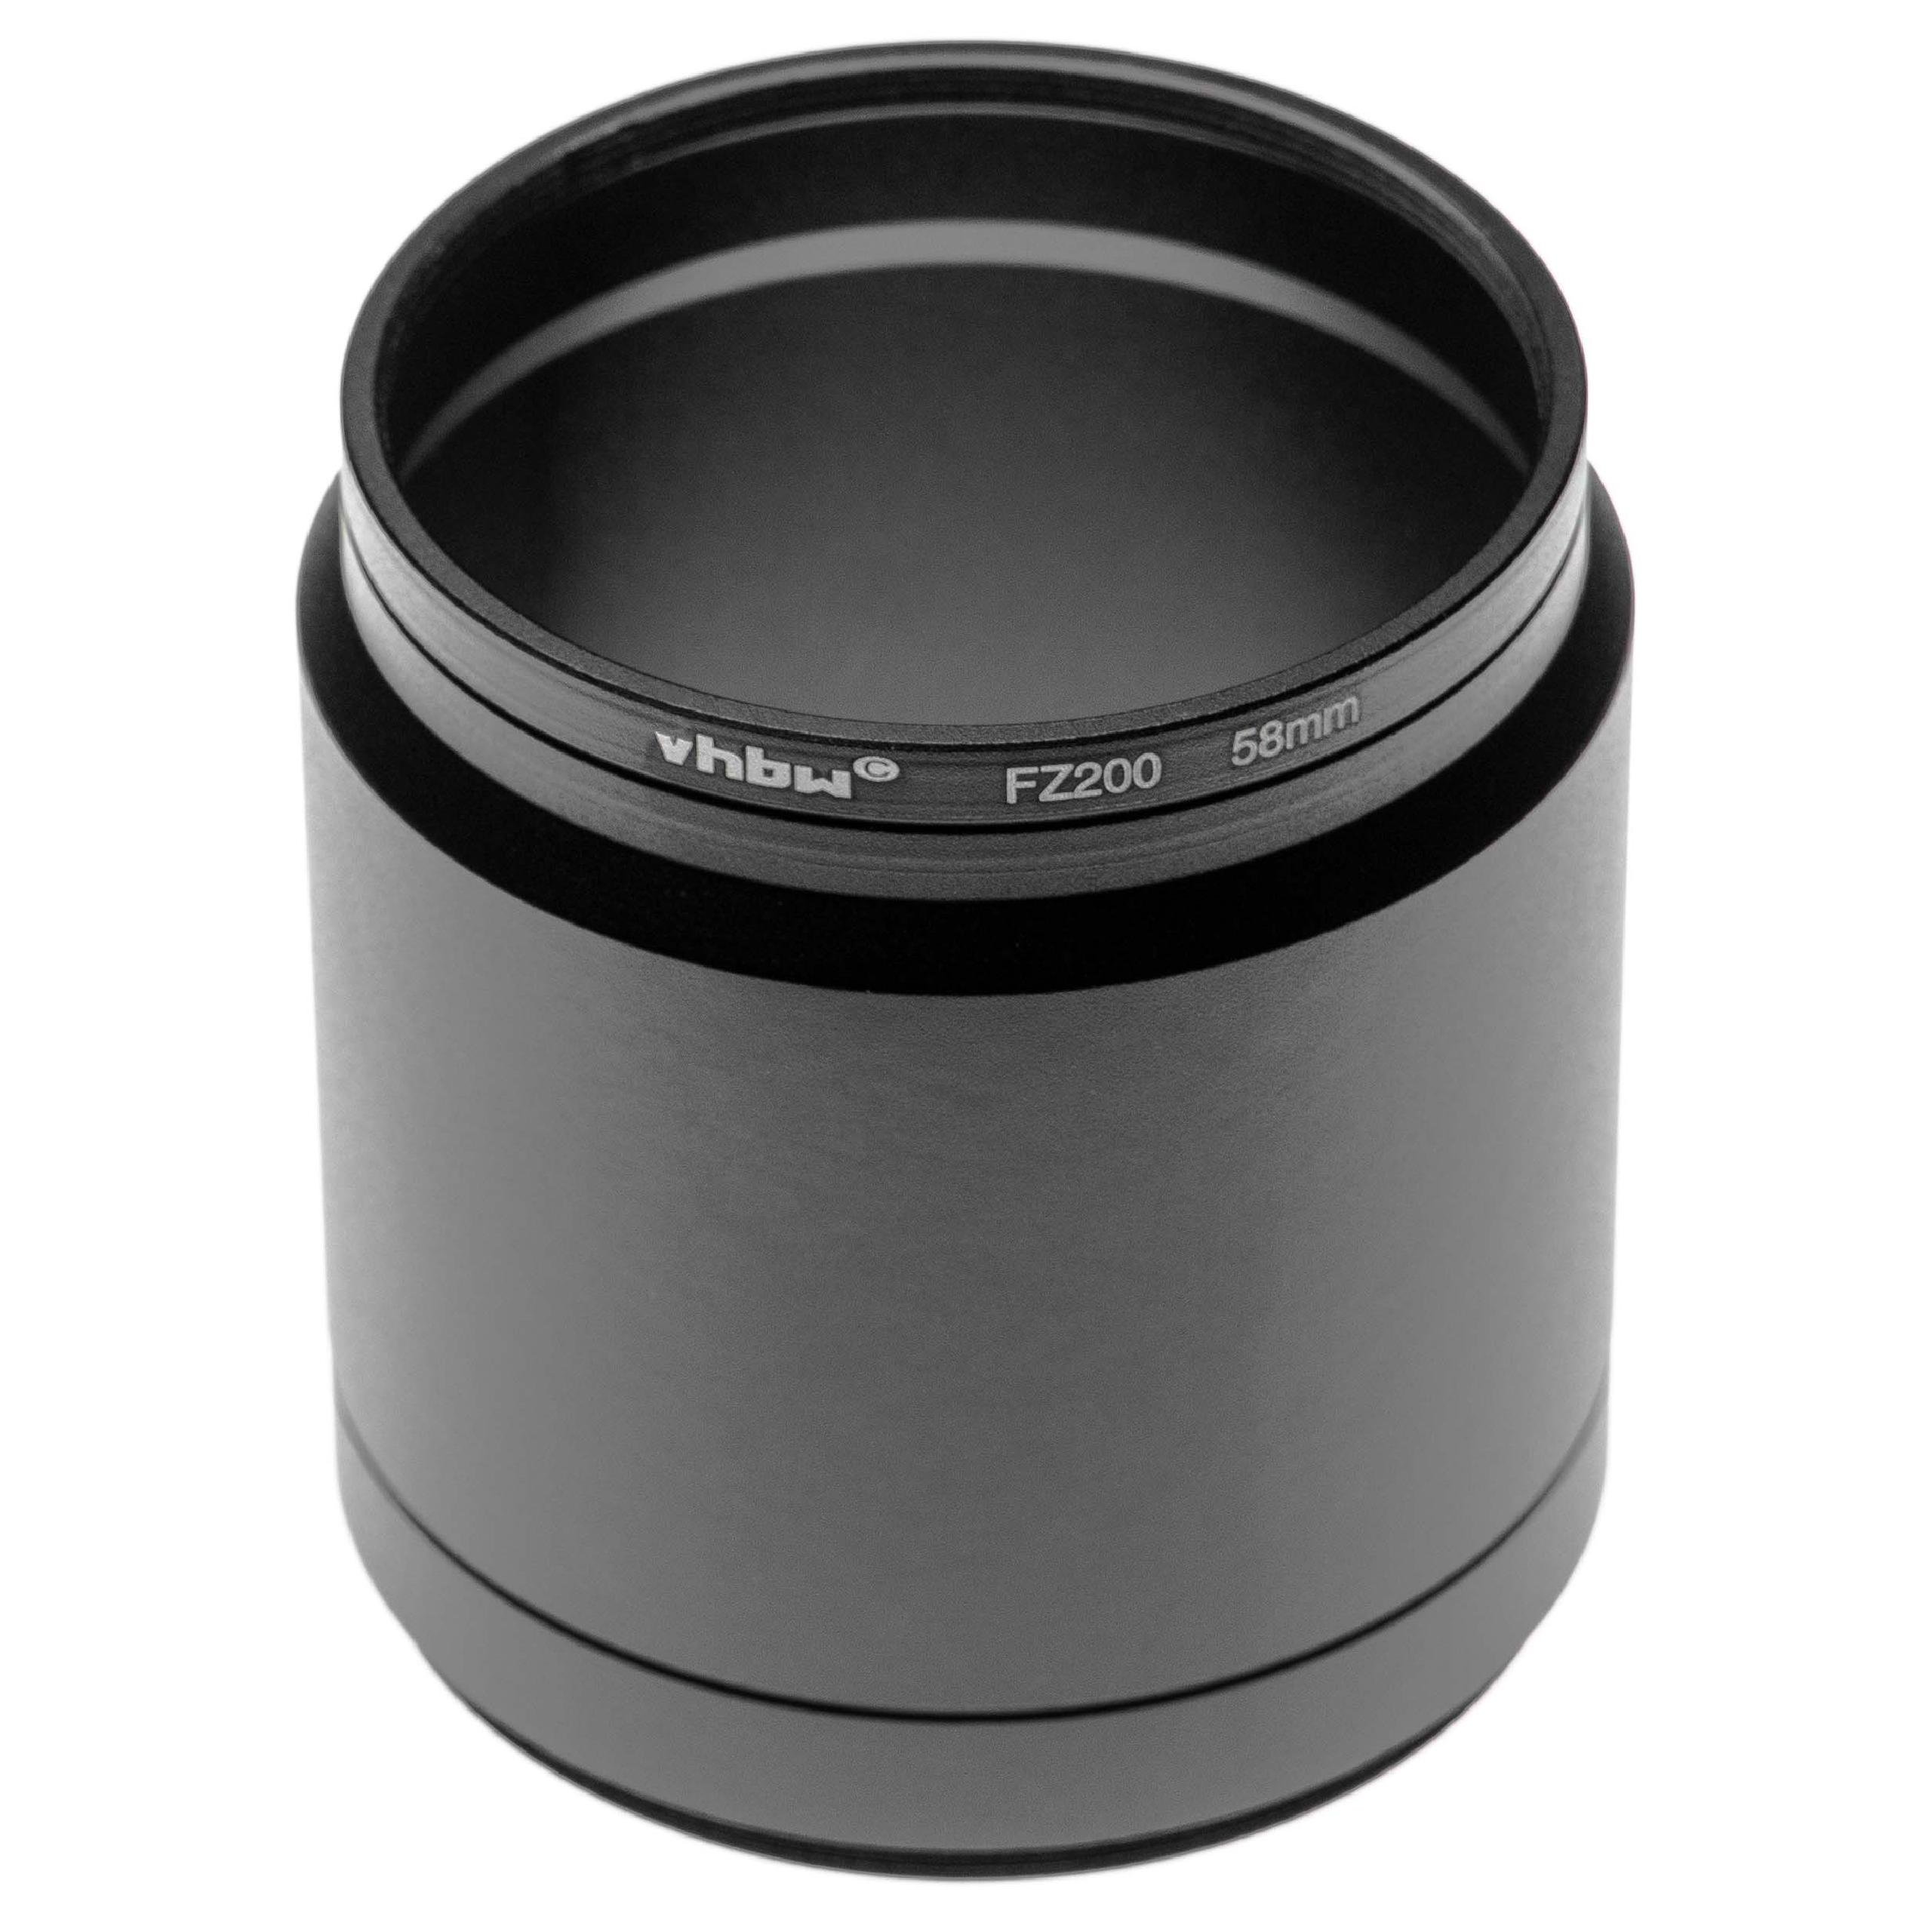 58 mm Filter Adapter, Tubular suitable for Panasonic Lumix DMC-FZ300 Camera Lens